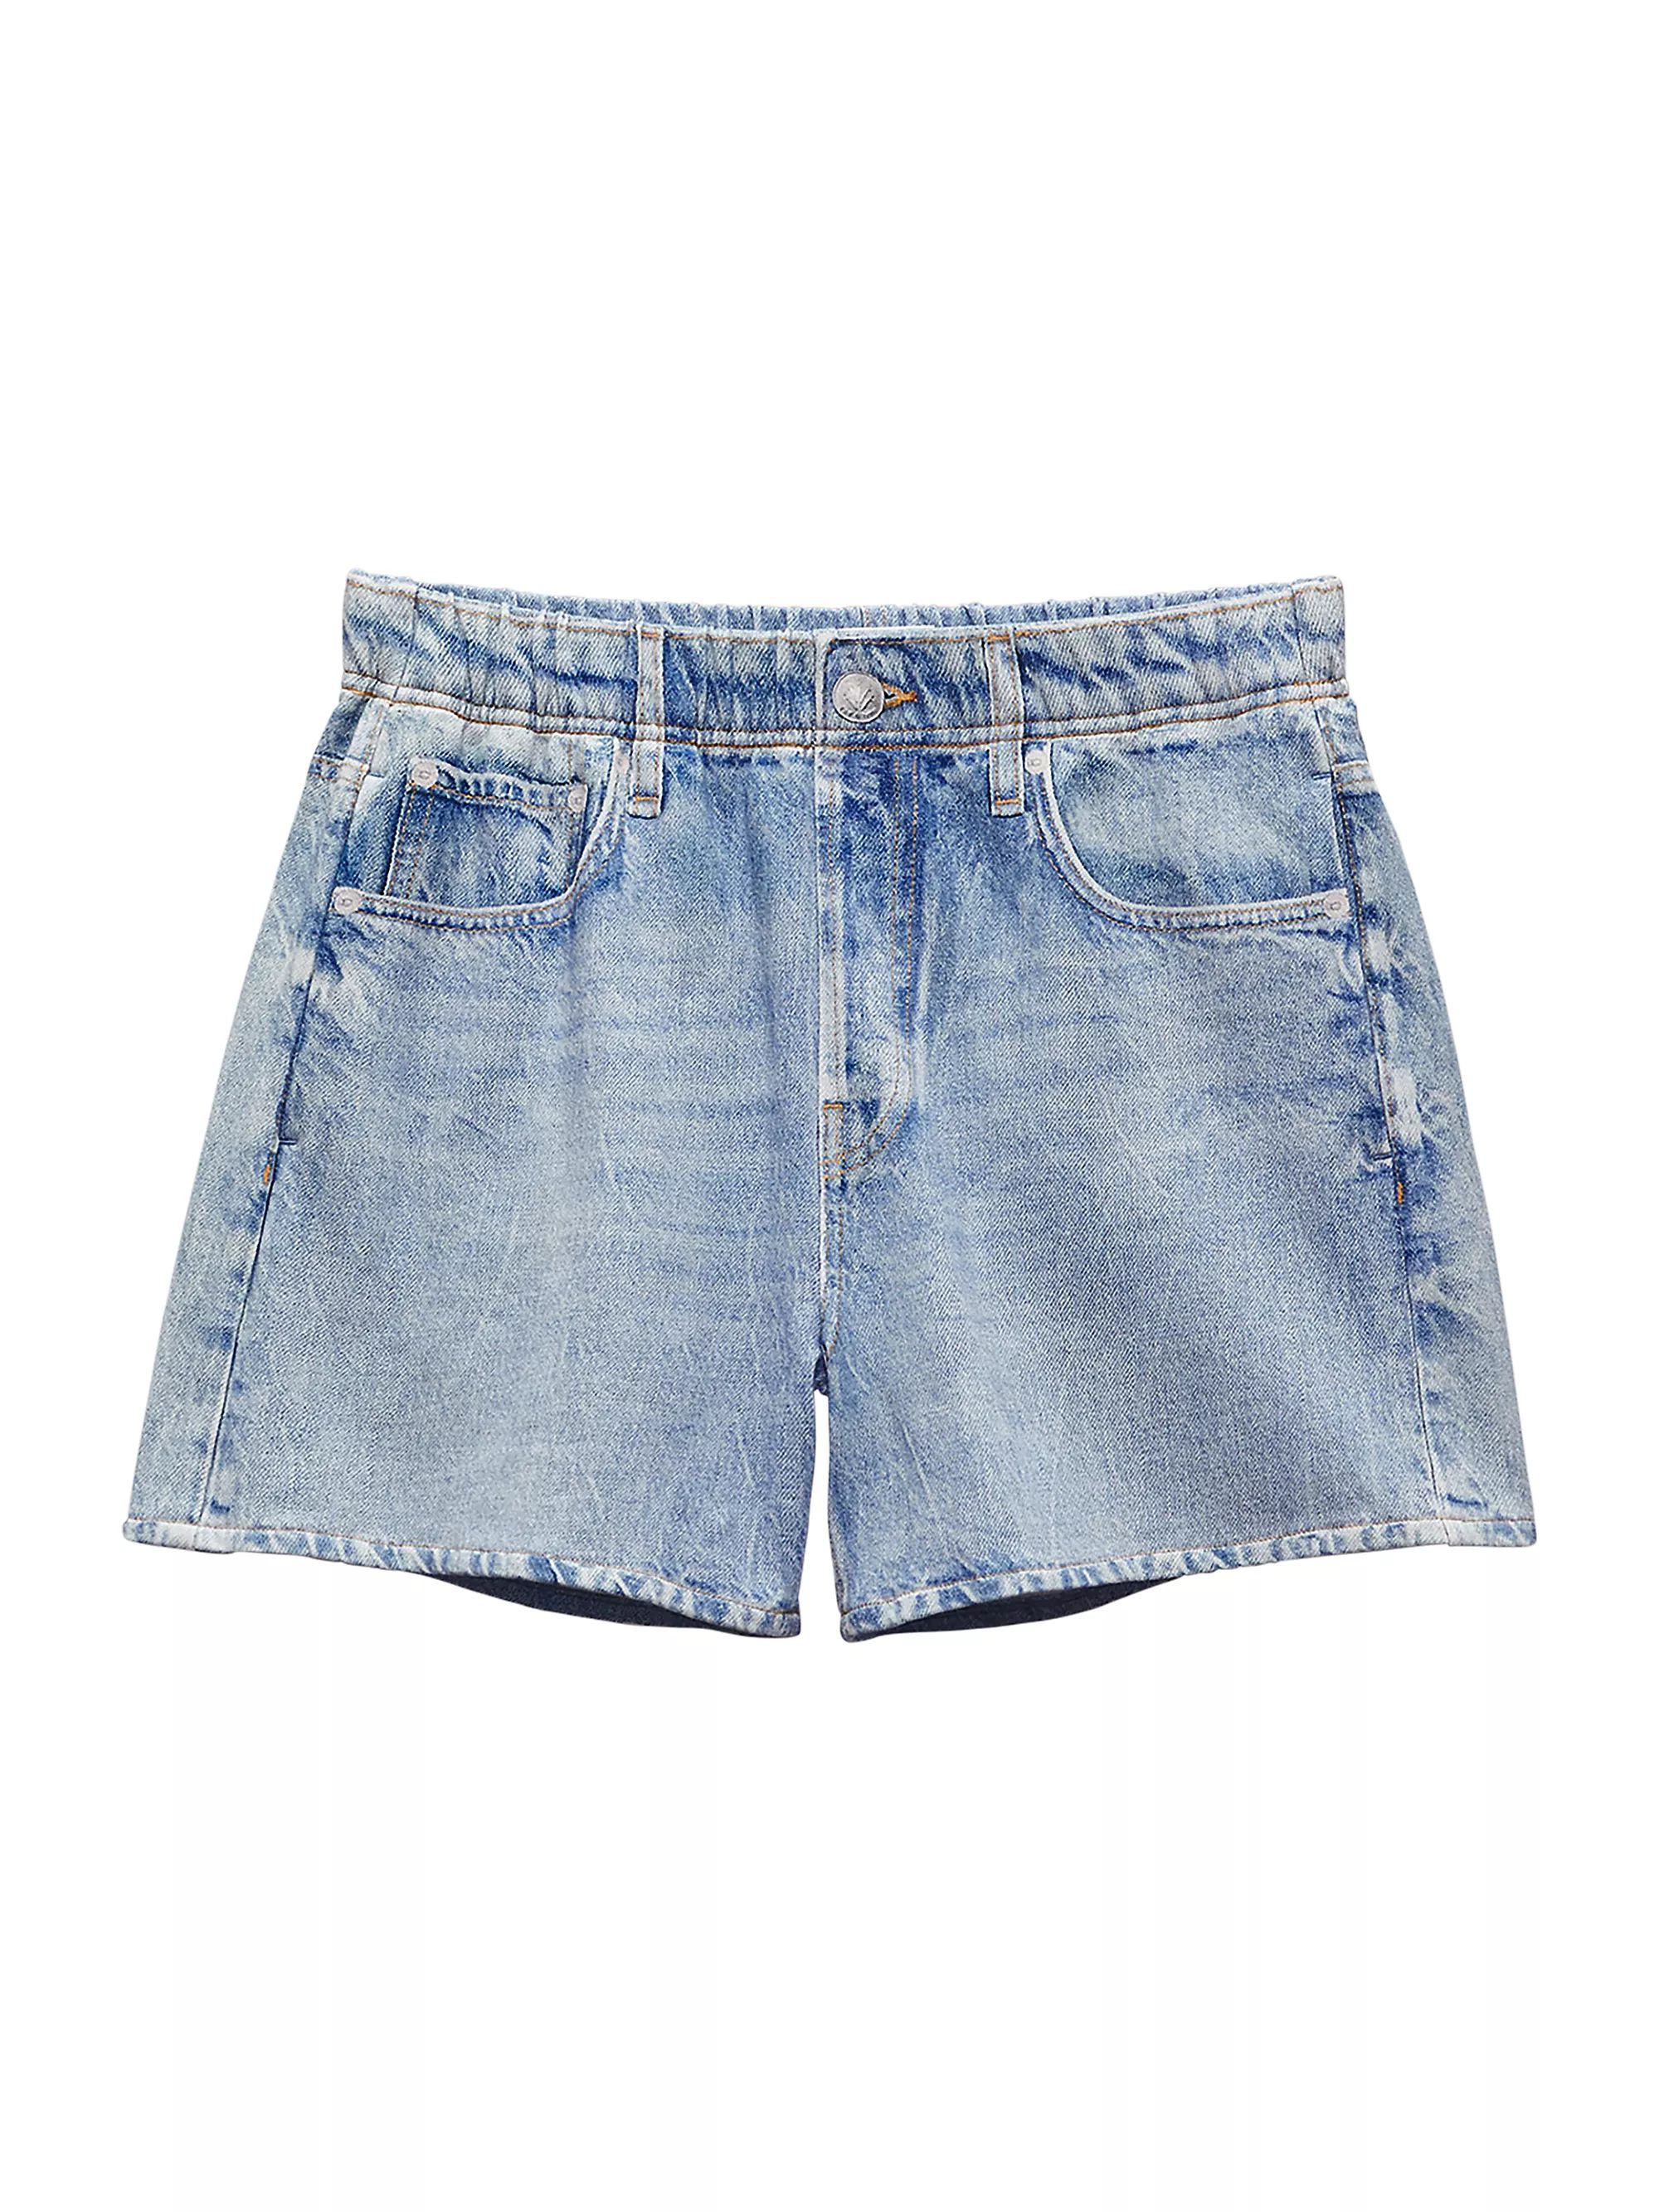 Miramar Cotton Walking Shorts | Saks Fifth Avenue